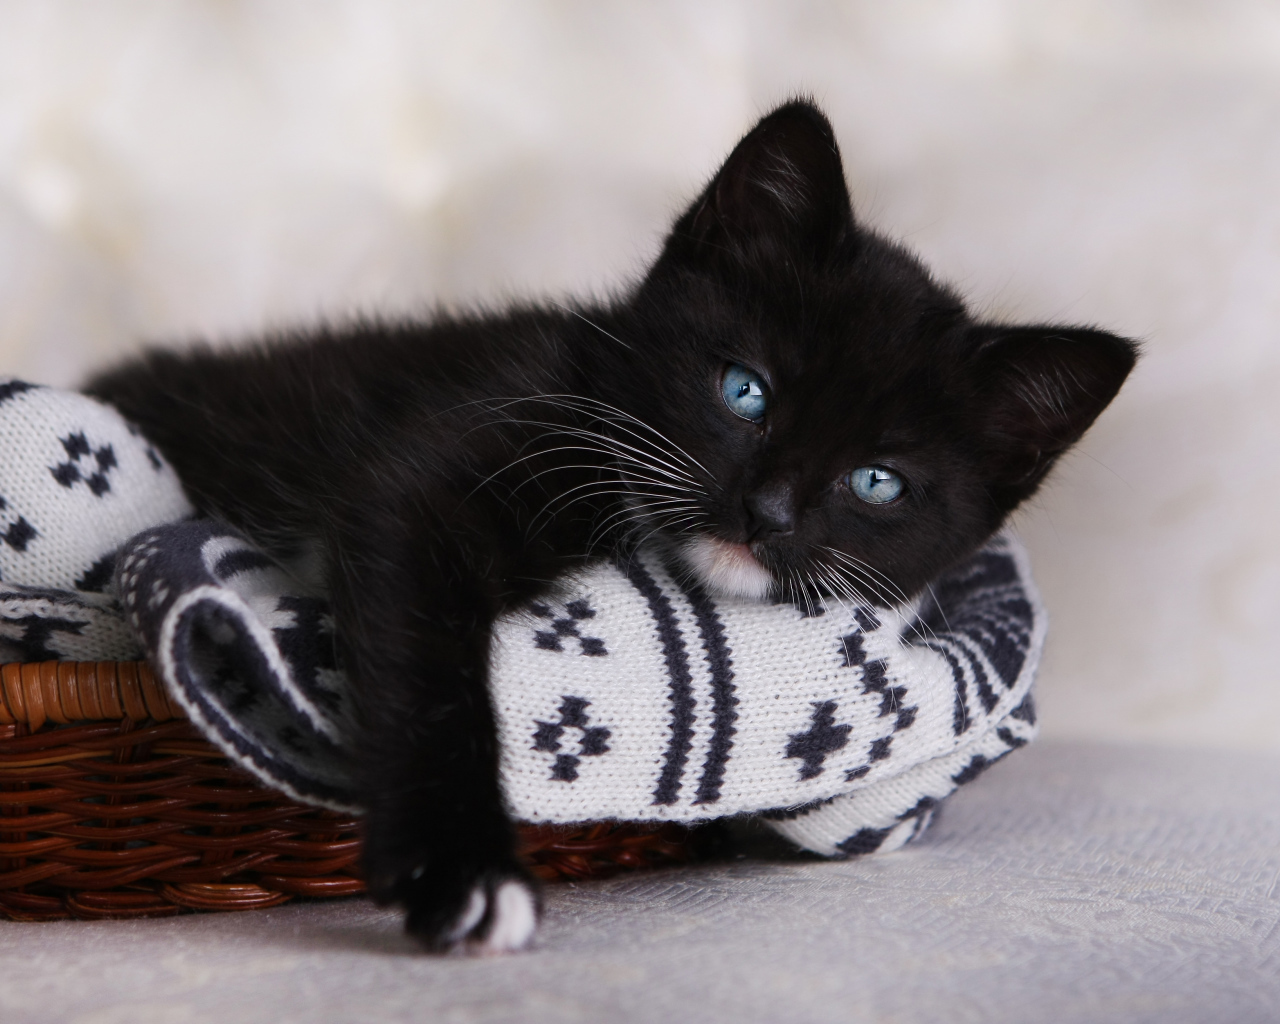 Маленький черный котенок лежит в корзинке 